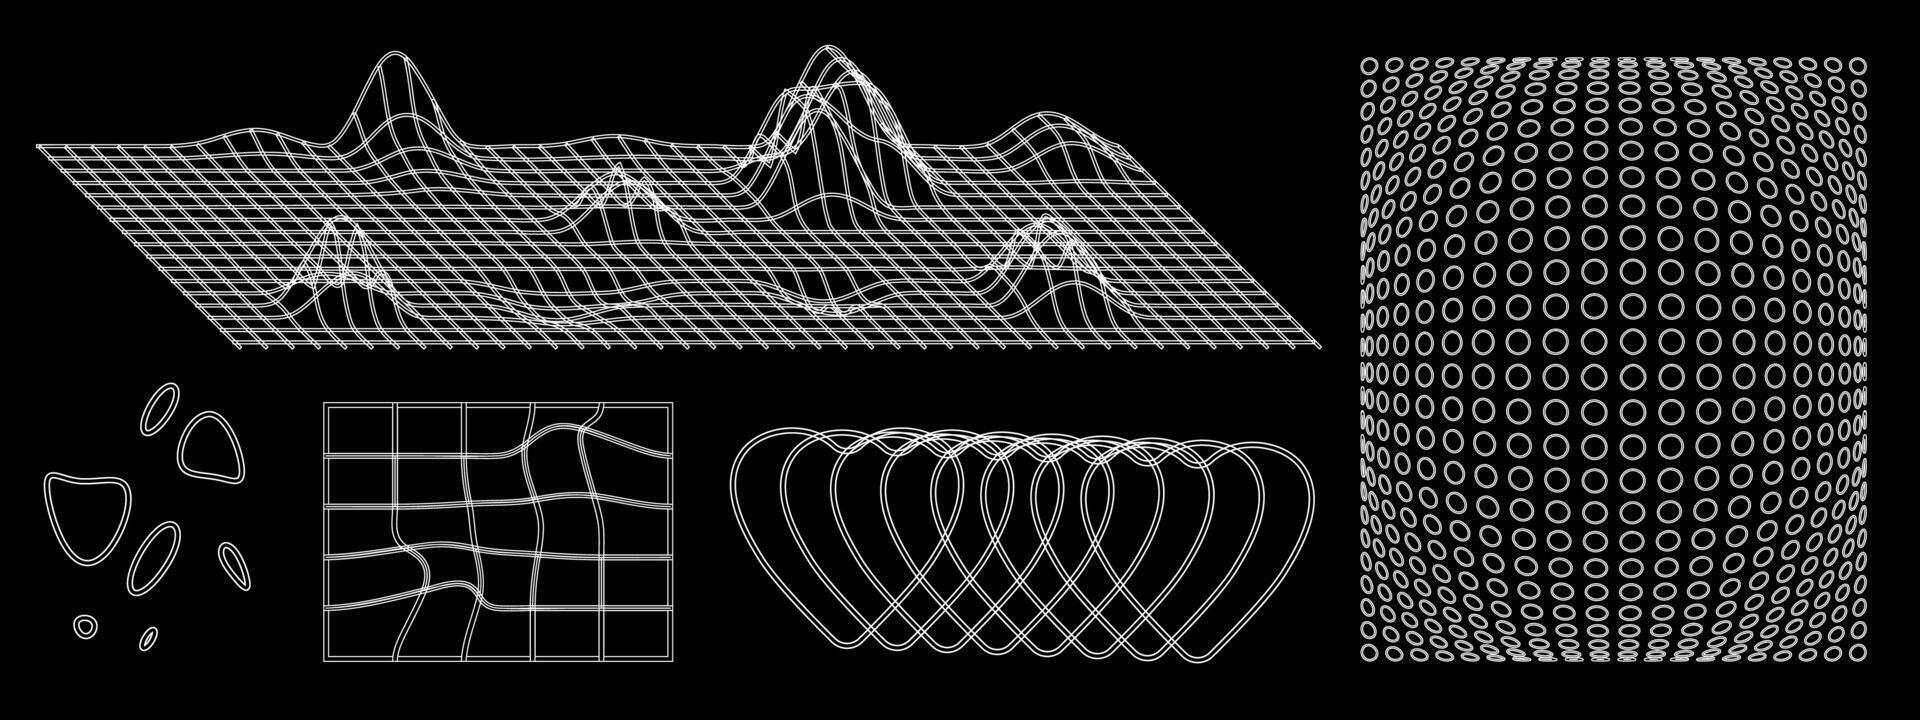 abstract futuristische voorwerpen en mazen. vector illustratie van digitaal landschap met heuvels en bergen. tekening van convex en kromgetrokken vormen.